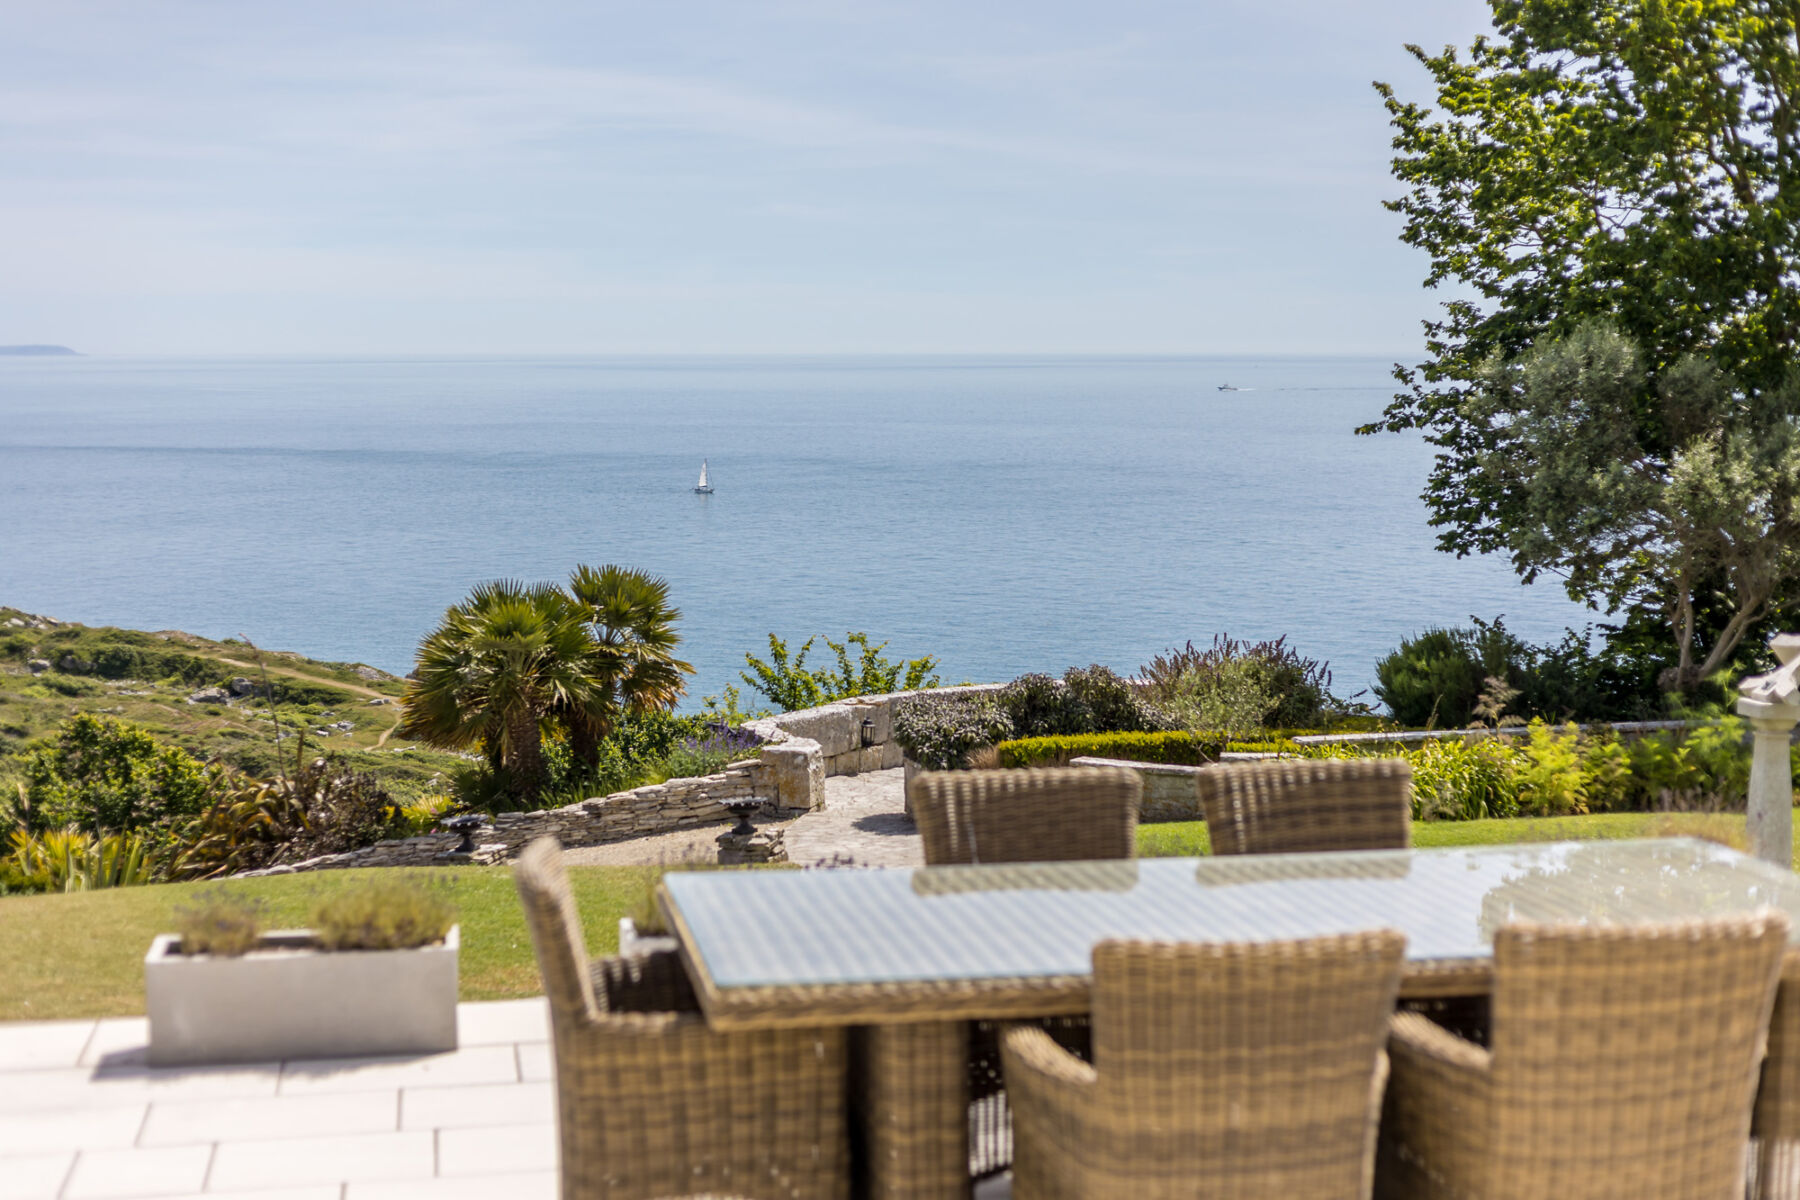 The Pennsylvania Castle Estate - a Dorset wedding venue on a clifftop with incredible sea views.